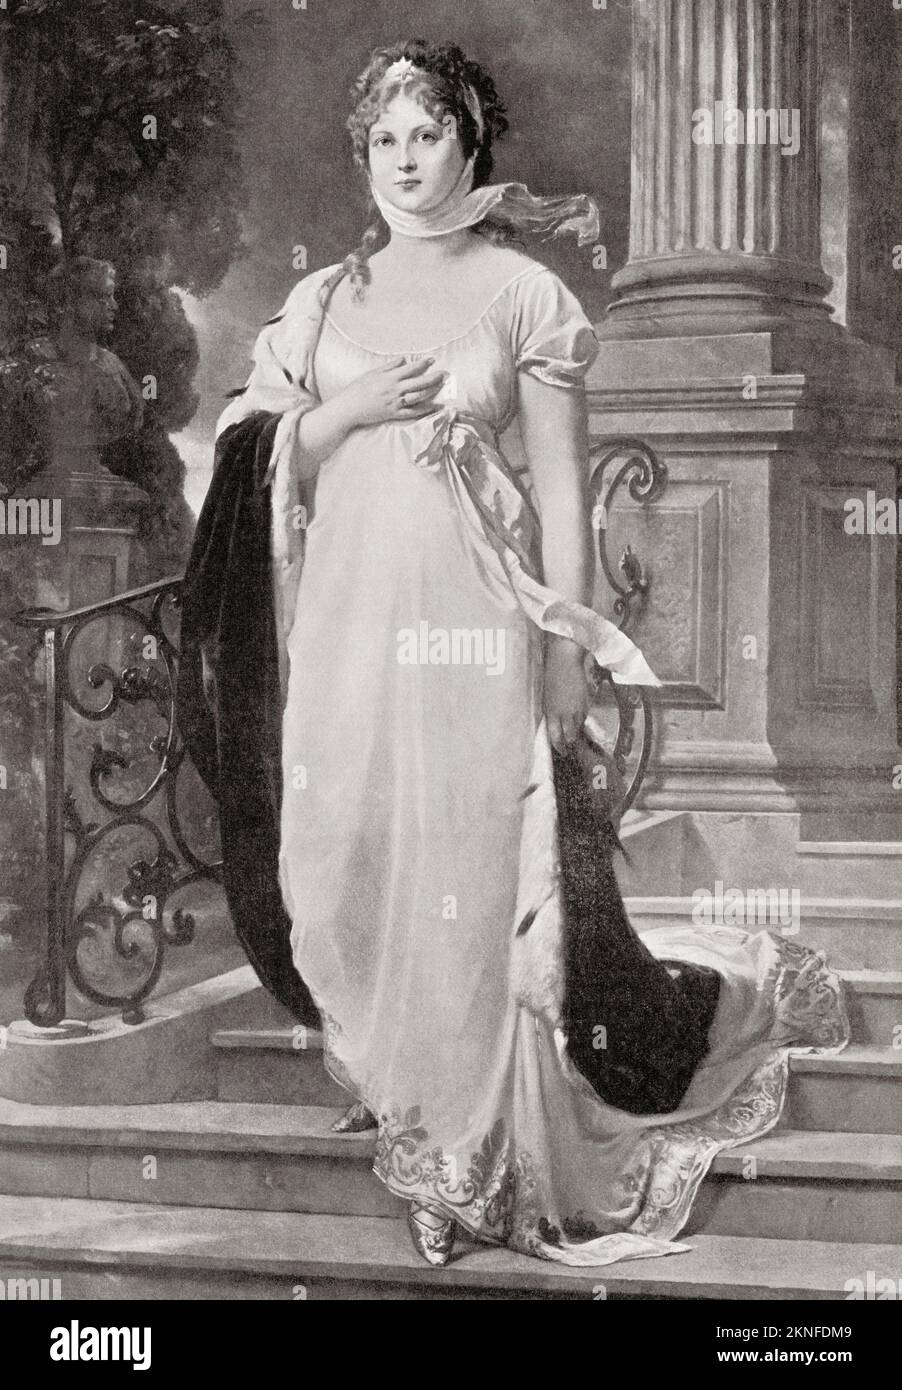 Duchess Louise de Mecklembourg-Strelitz, 1776 – 1810. La reine consort de la Prusse comme épouse du roi Frederick William III Banque D'Images